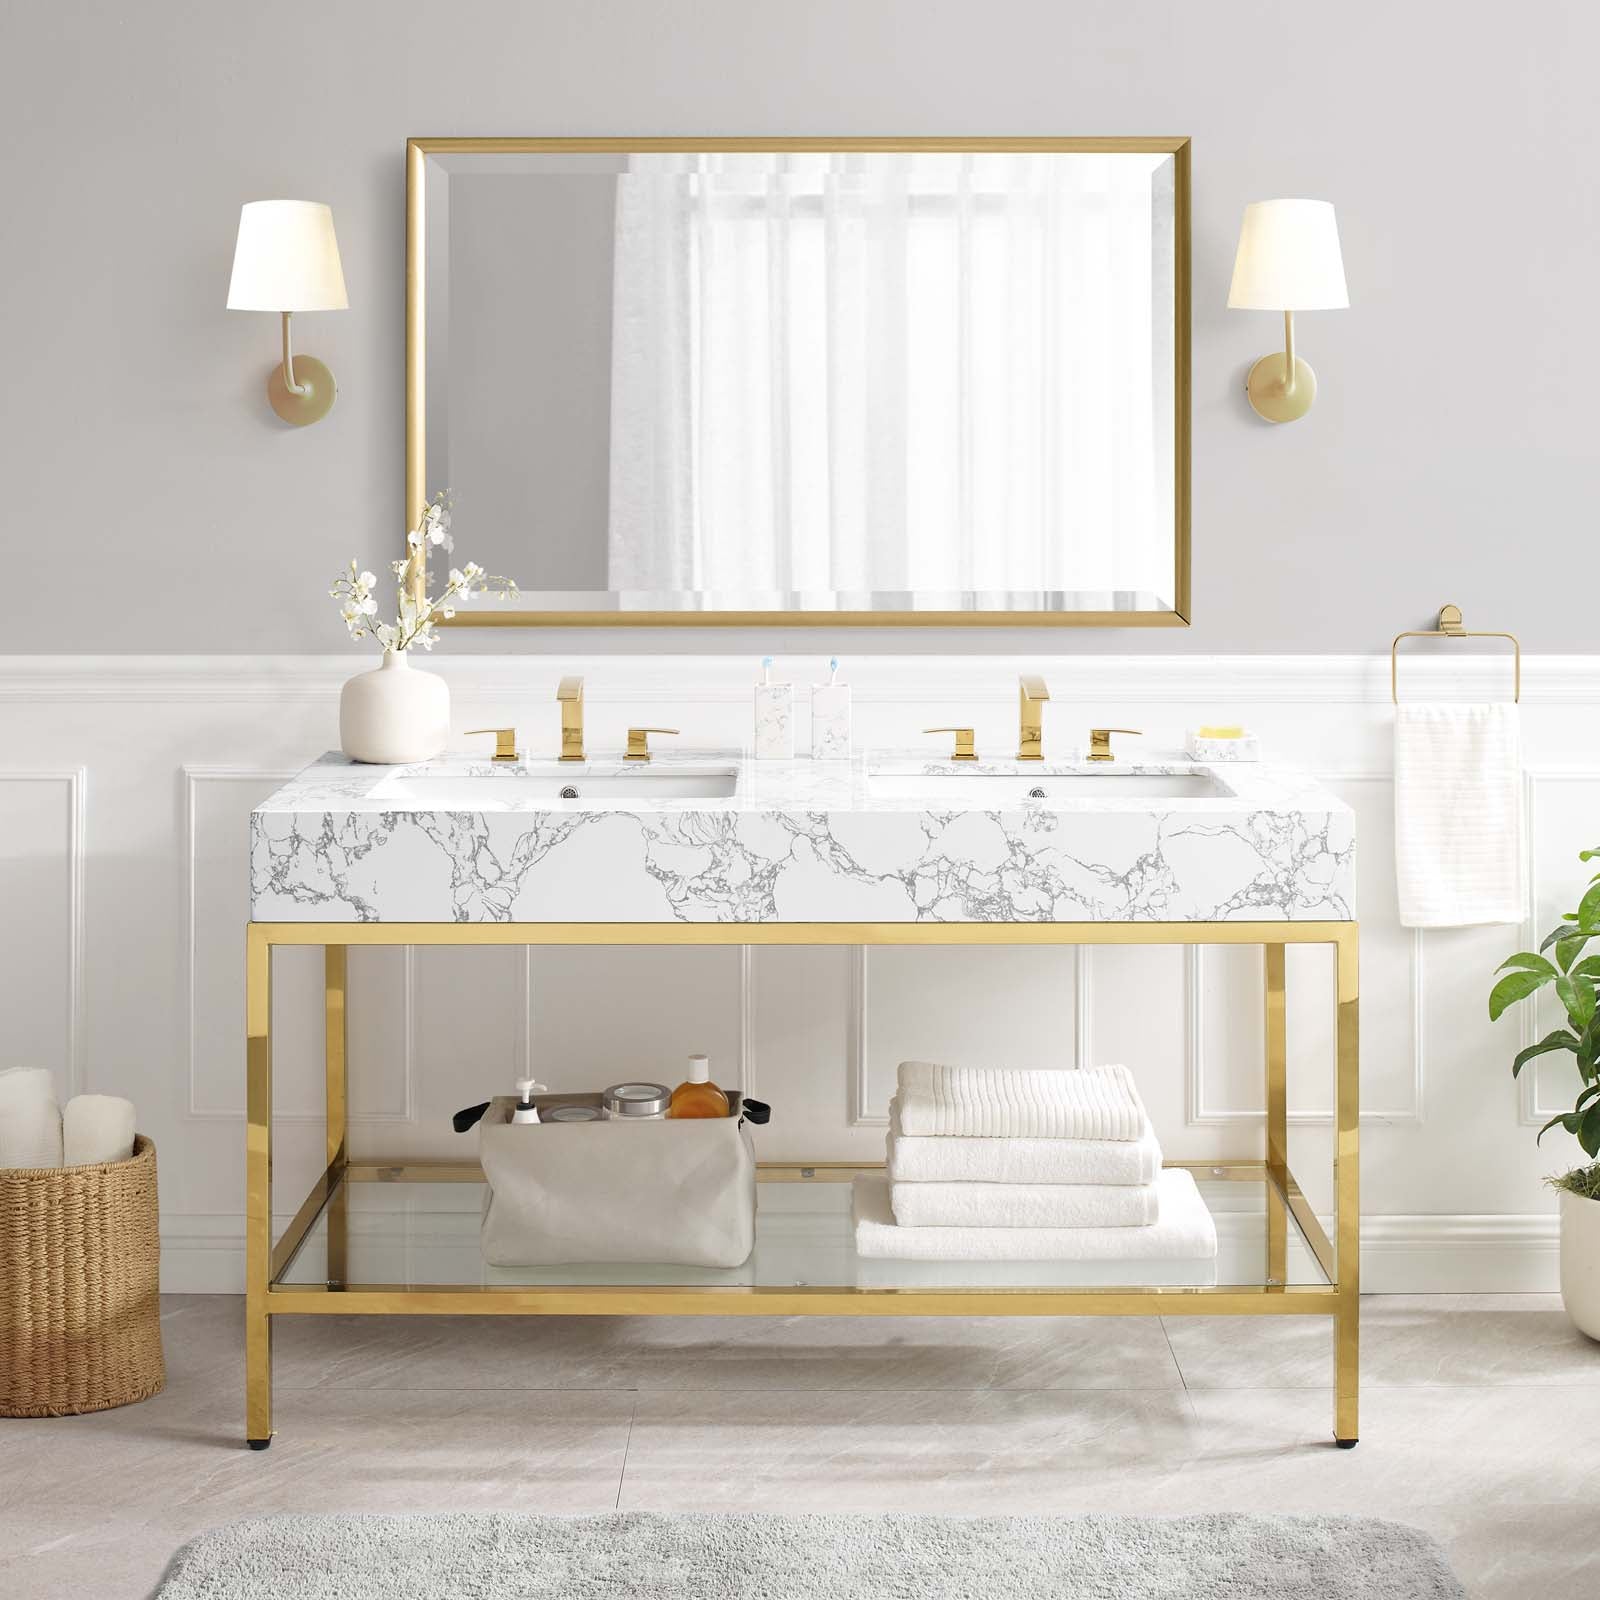 Kingsley 60" Gold Stainless Steel Bathroom Vanity - East Shore Modern Home Furnishings